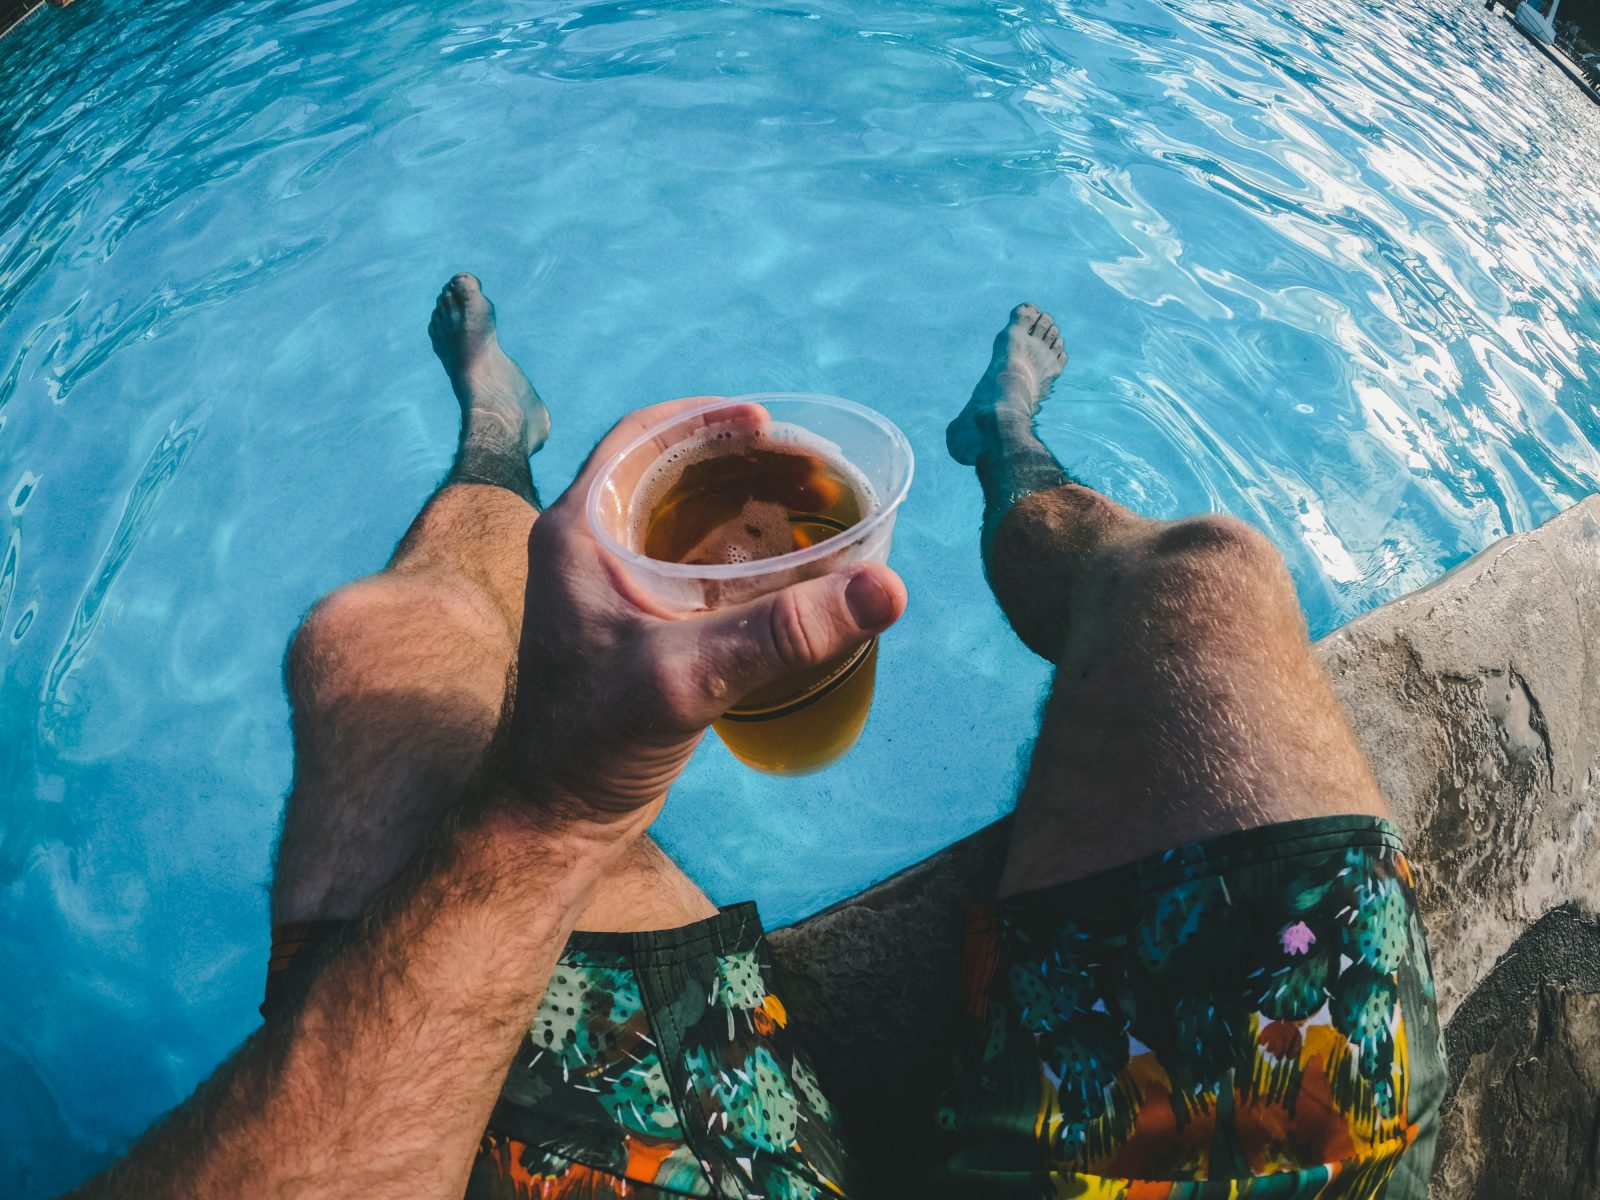 man holding beer in pool.